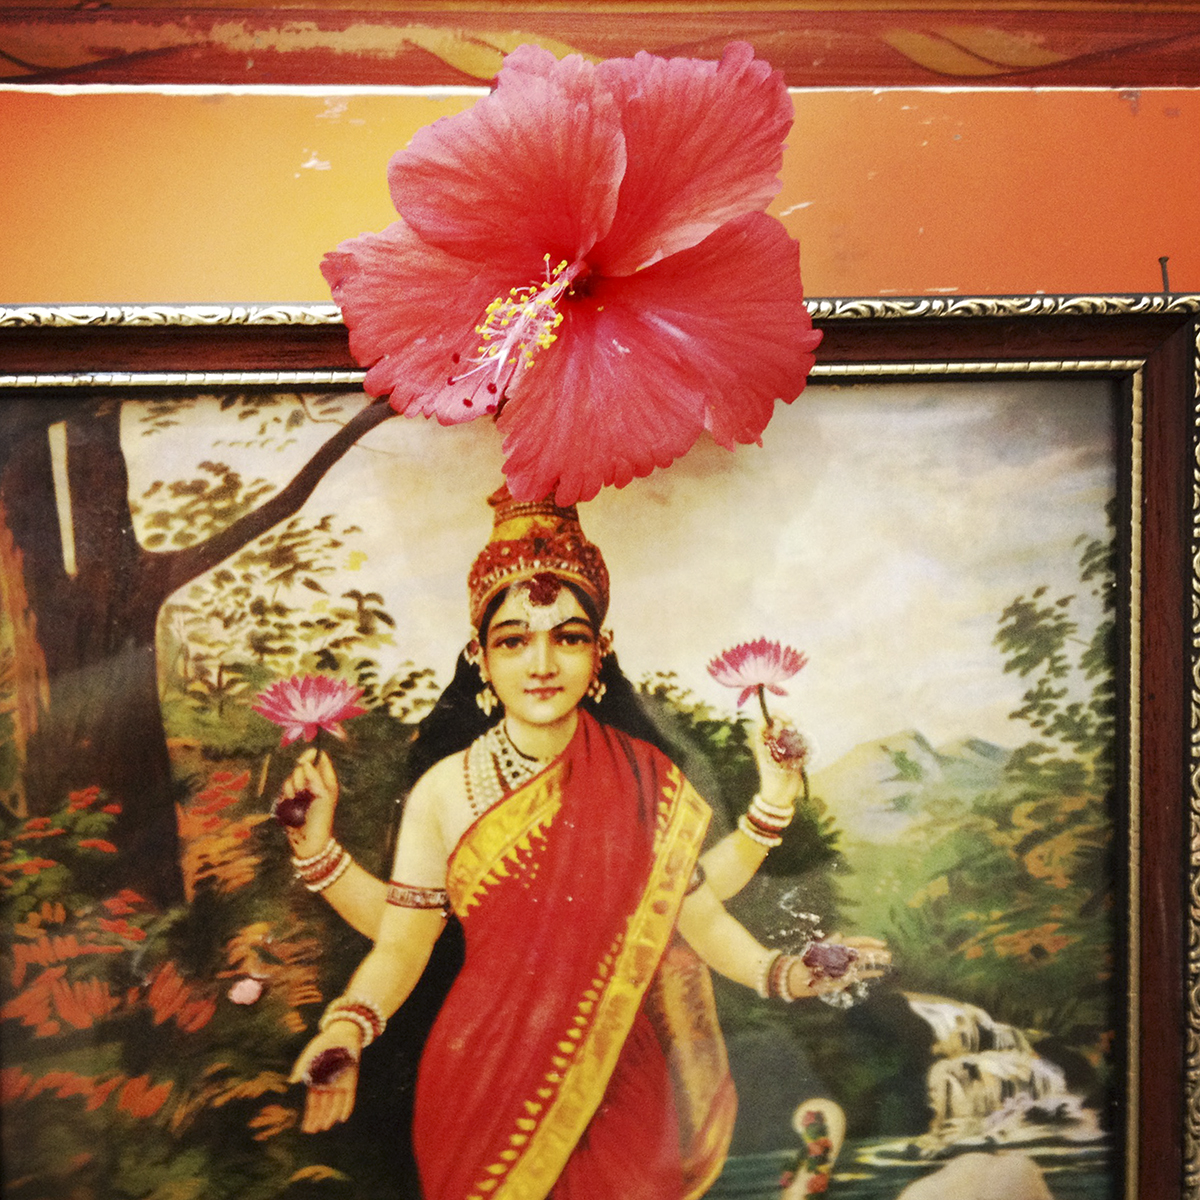 Flower on Indian god image